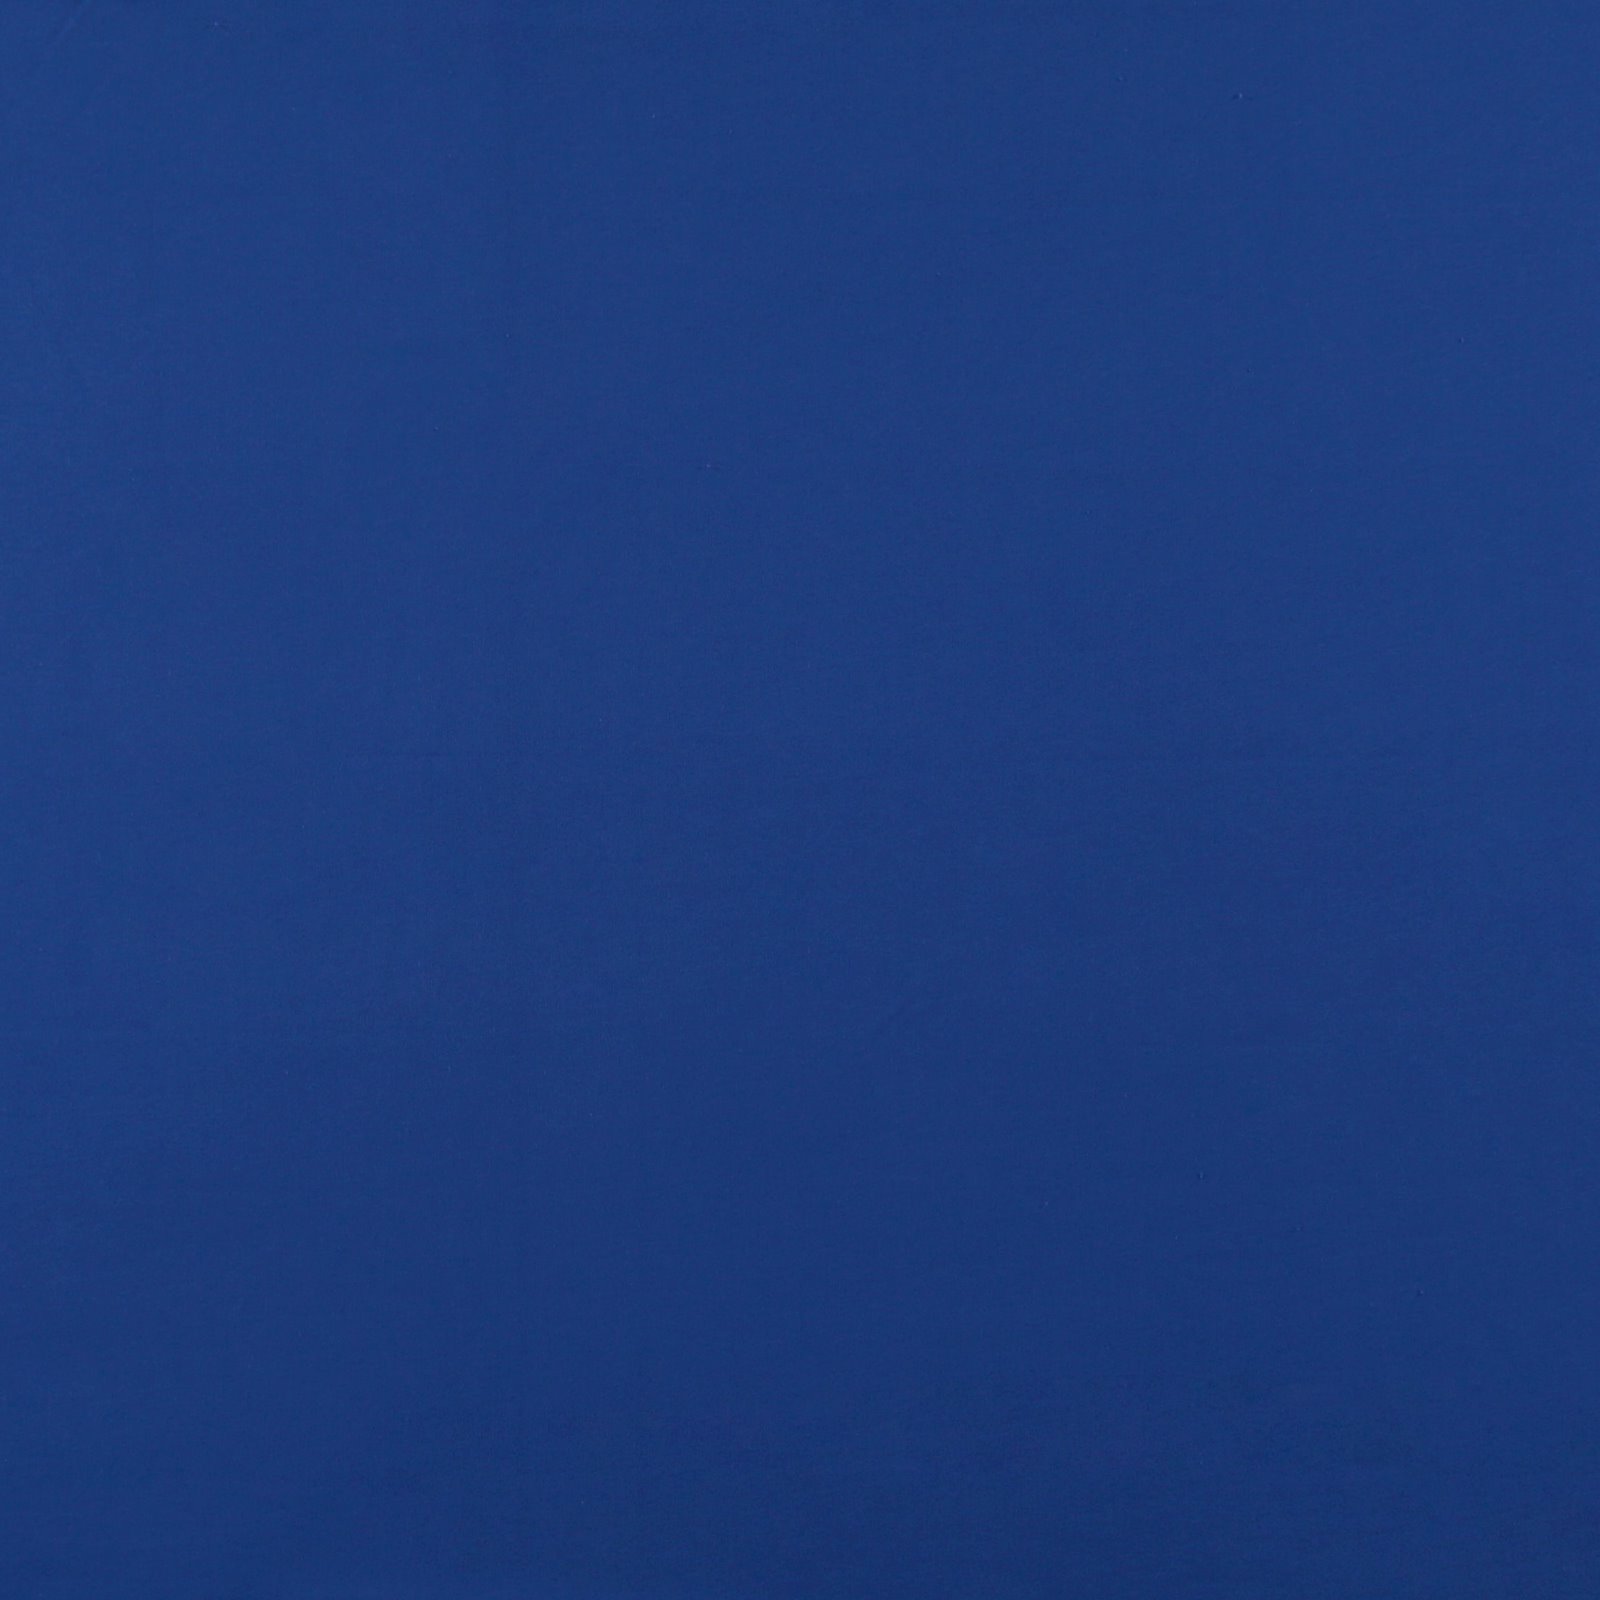 Schinkenabdeckung aus Stoff in Blau mit lebendigem Blau und blauer Kordel,  Einheitsgröße für Schinken und Paddel, vollständiger Umweltschutz.